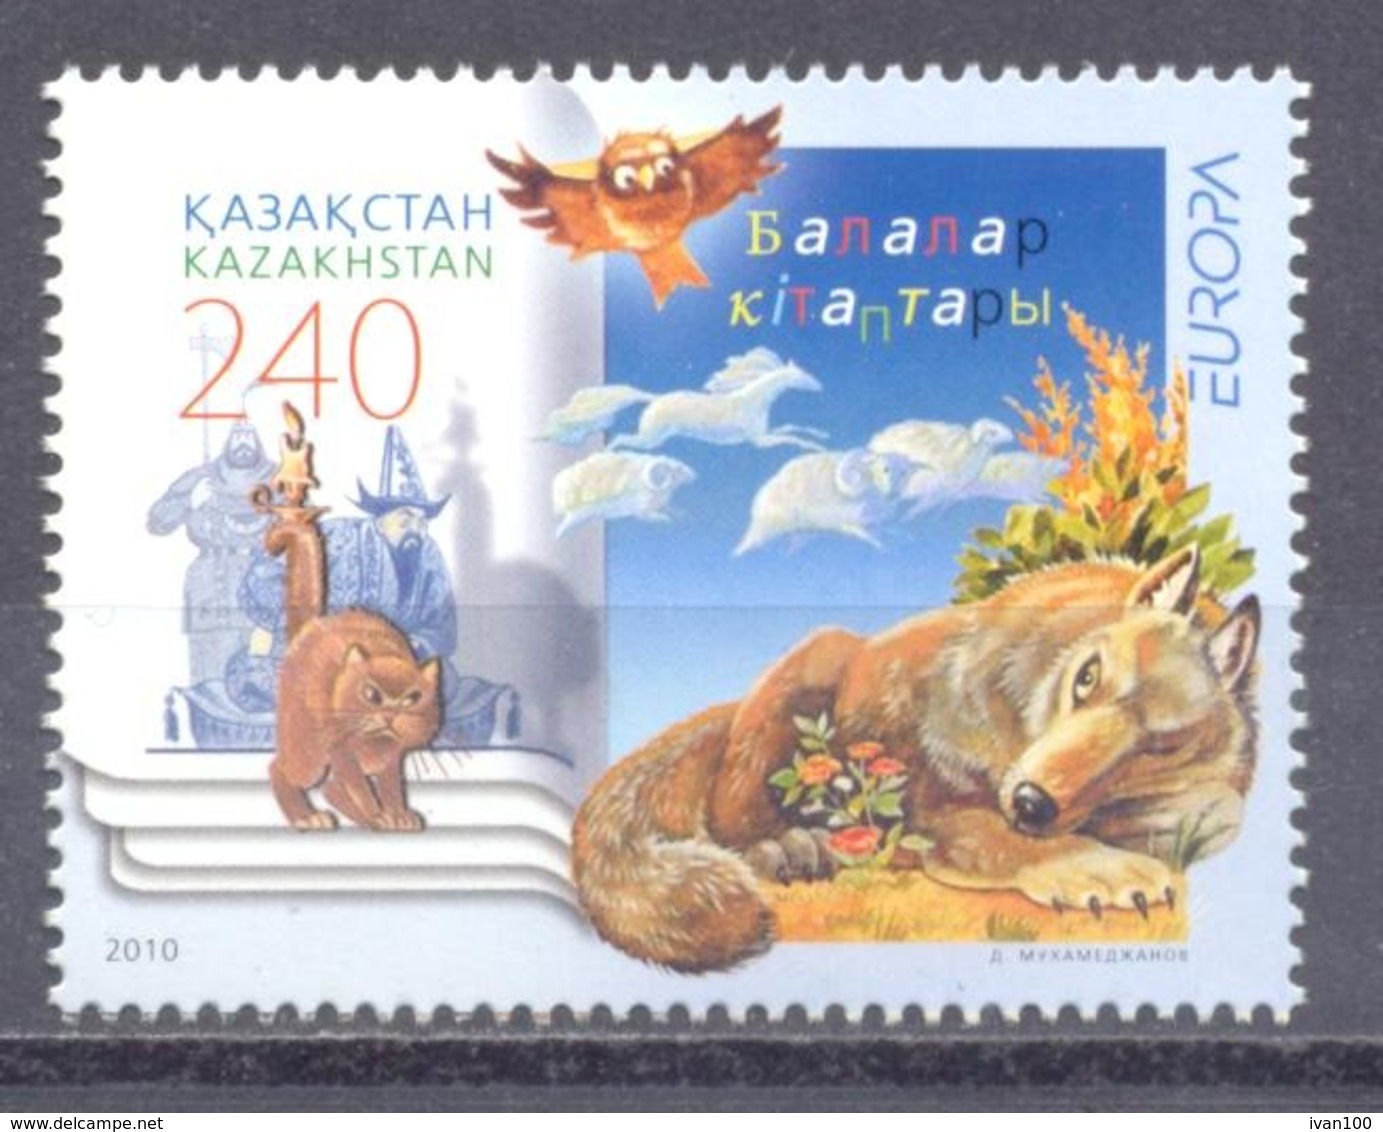 2010. Kazakhstan, Europa 2010, 1v, Mint/** - Kazakhstan